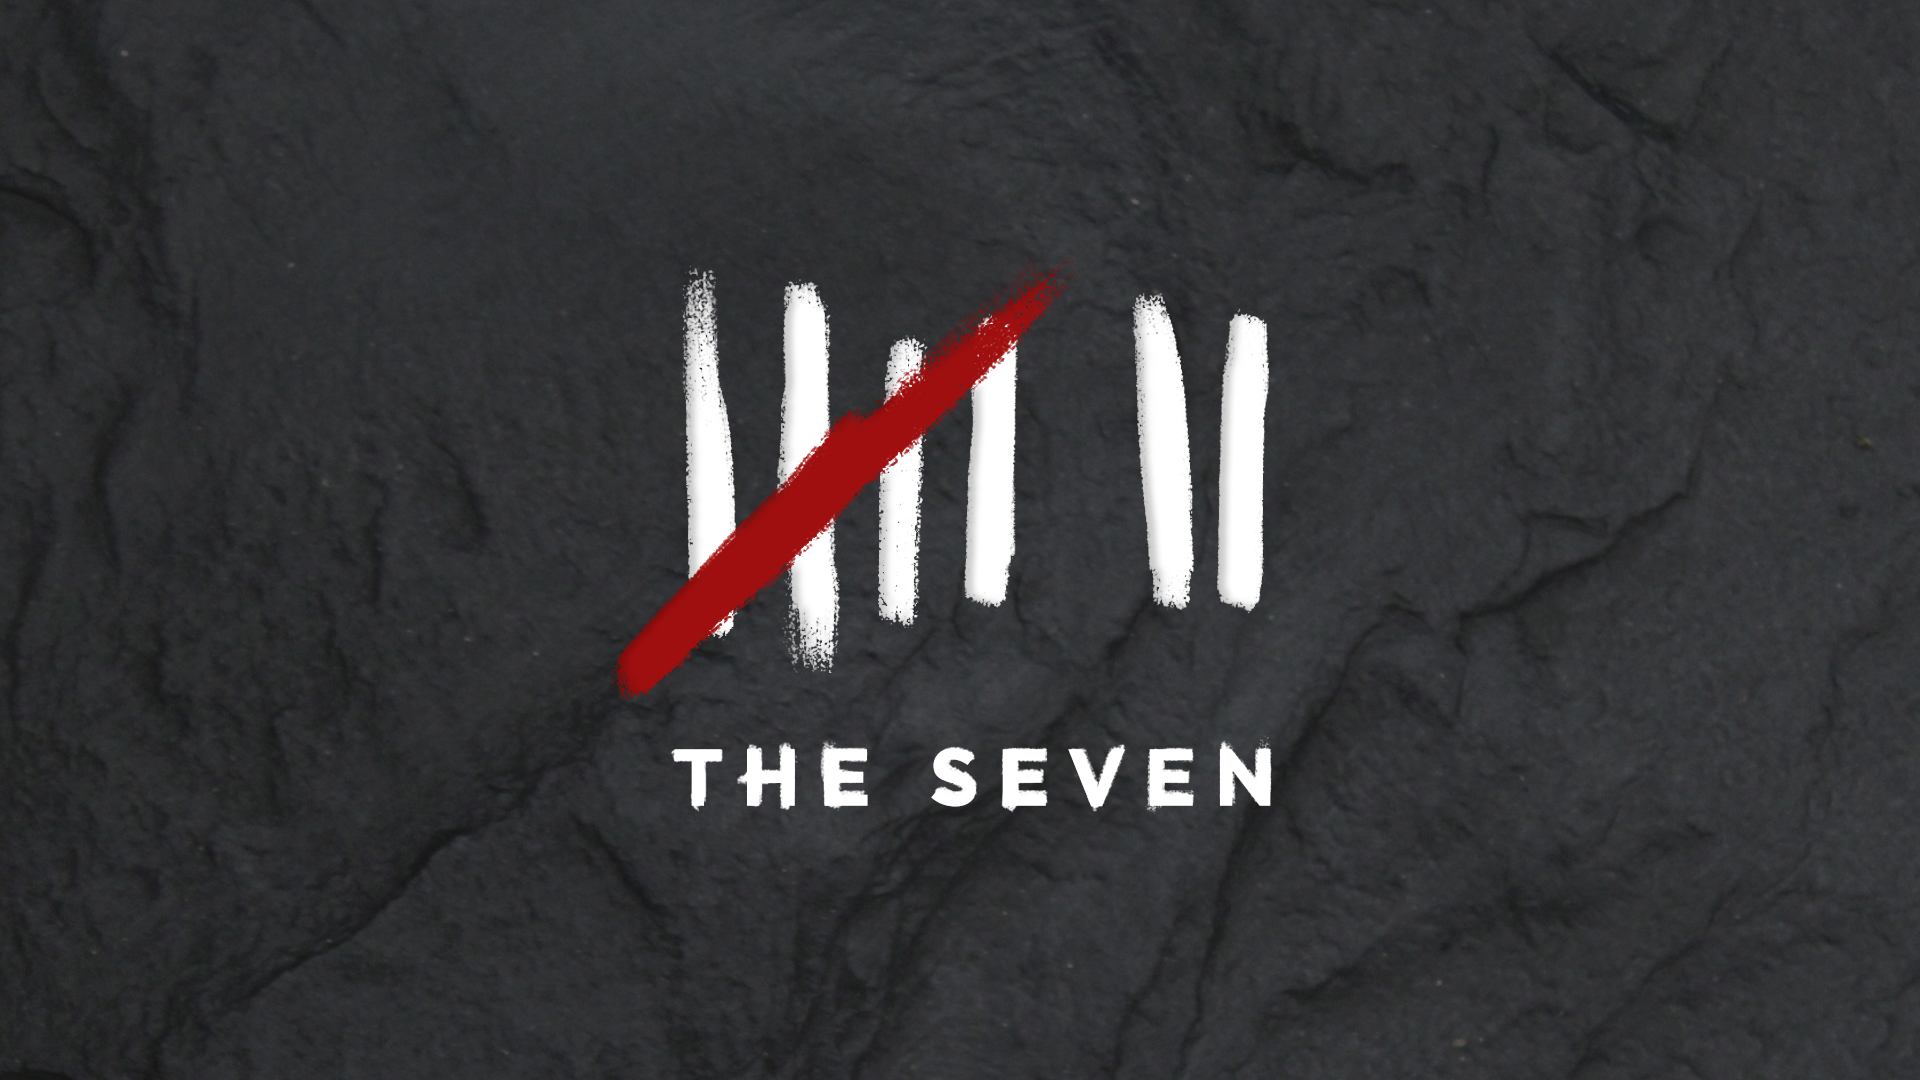 The Seven: Dead Man Walking